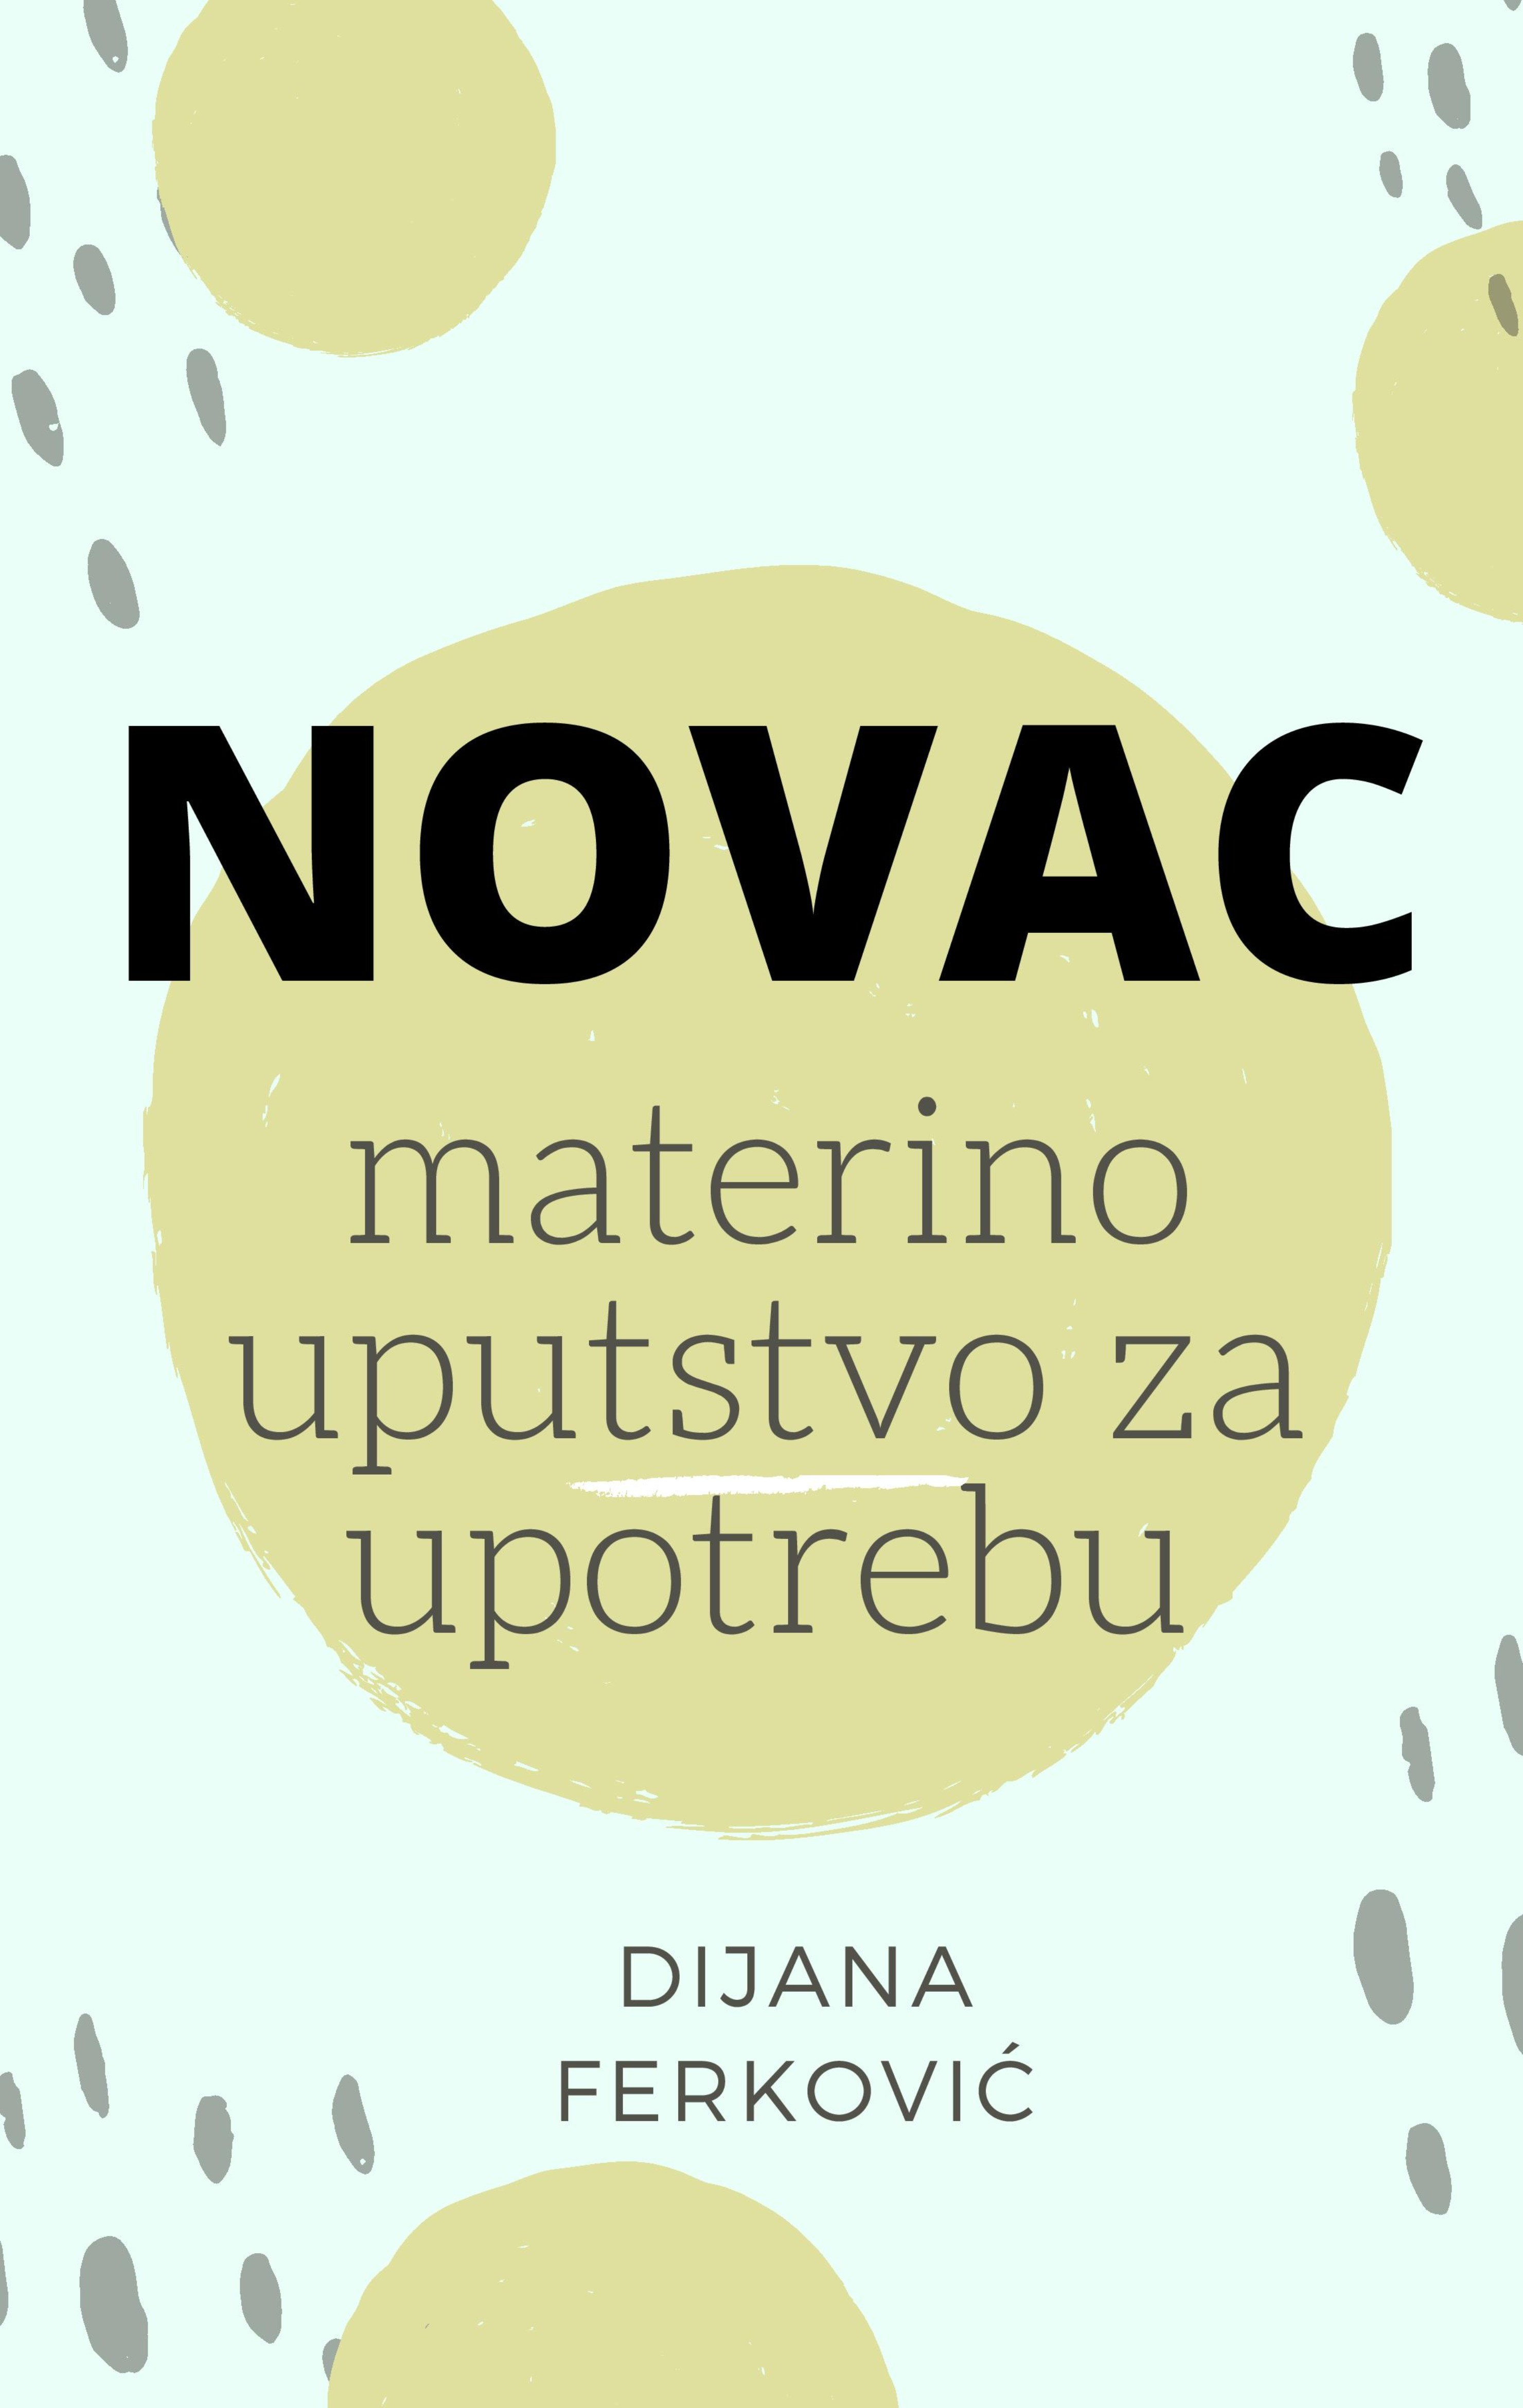 Dijana Ferković: NOVAC materino uputstvo za upotrebu